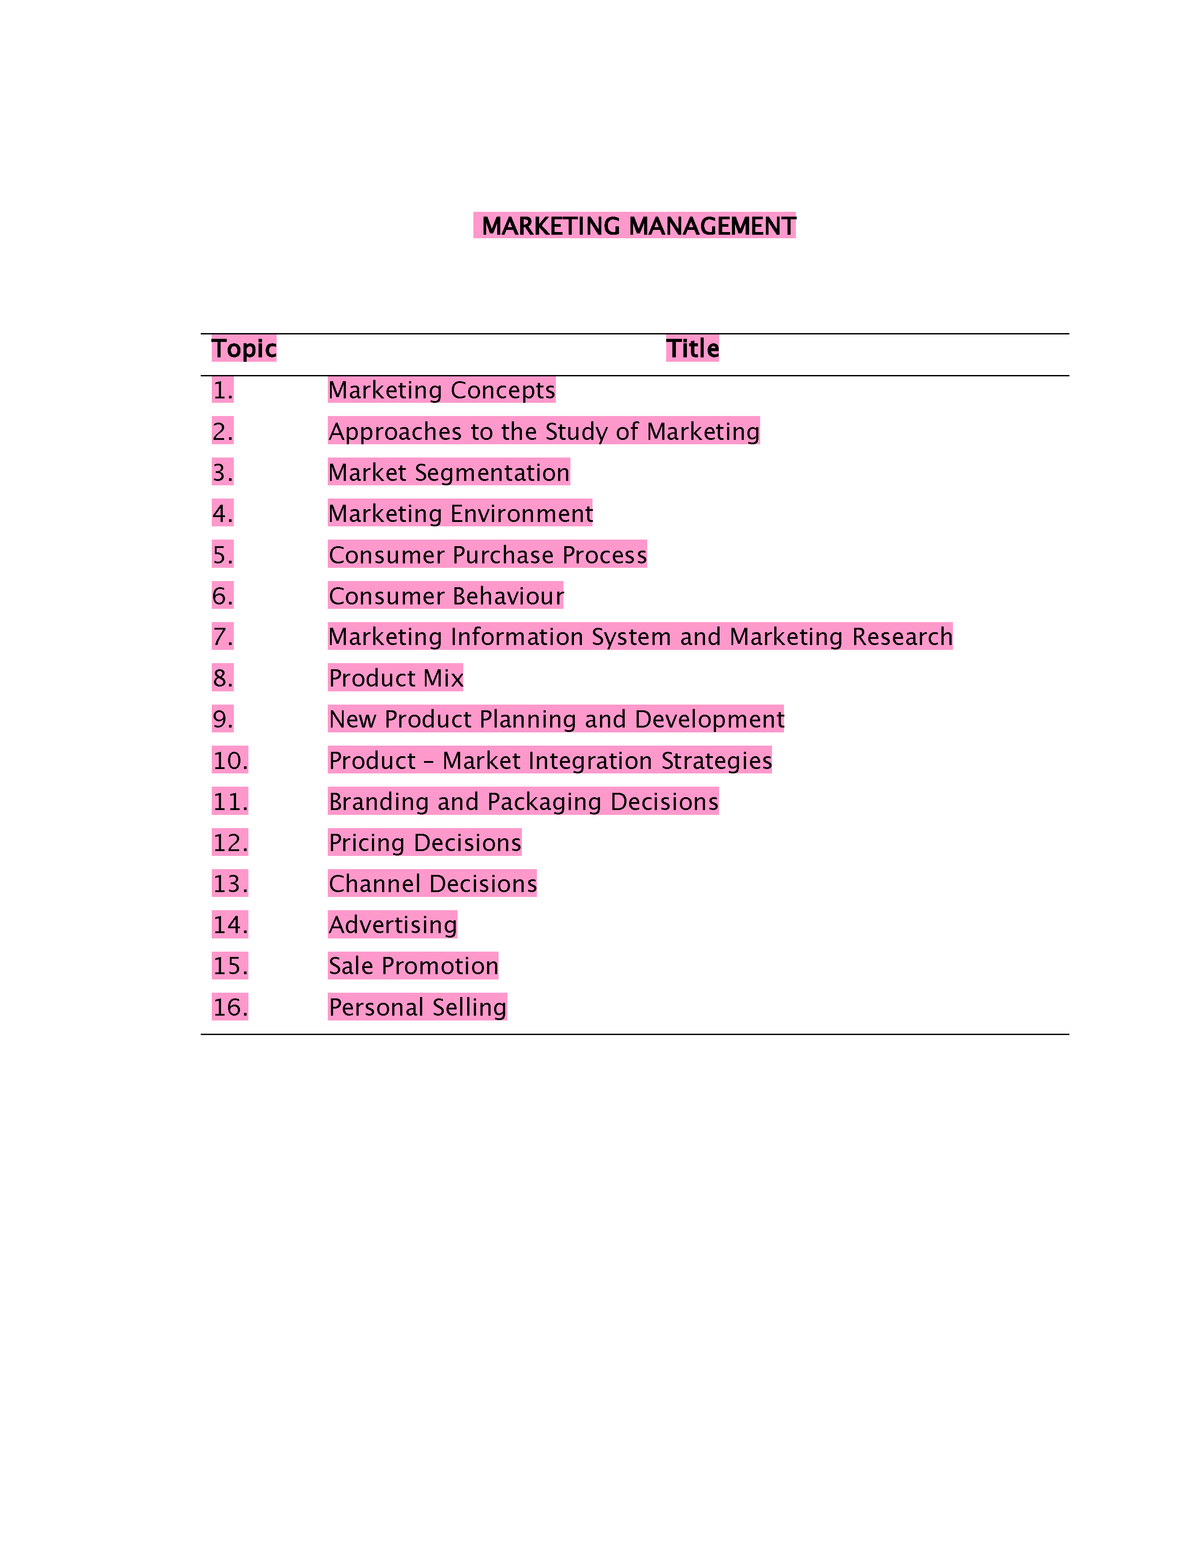 Management topics. Книга MBA маркетинг. Topical title.